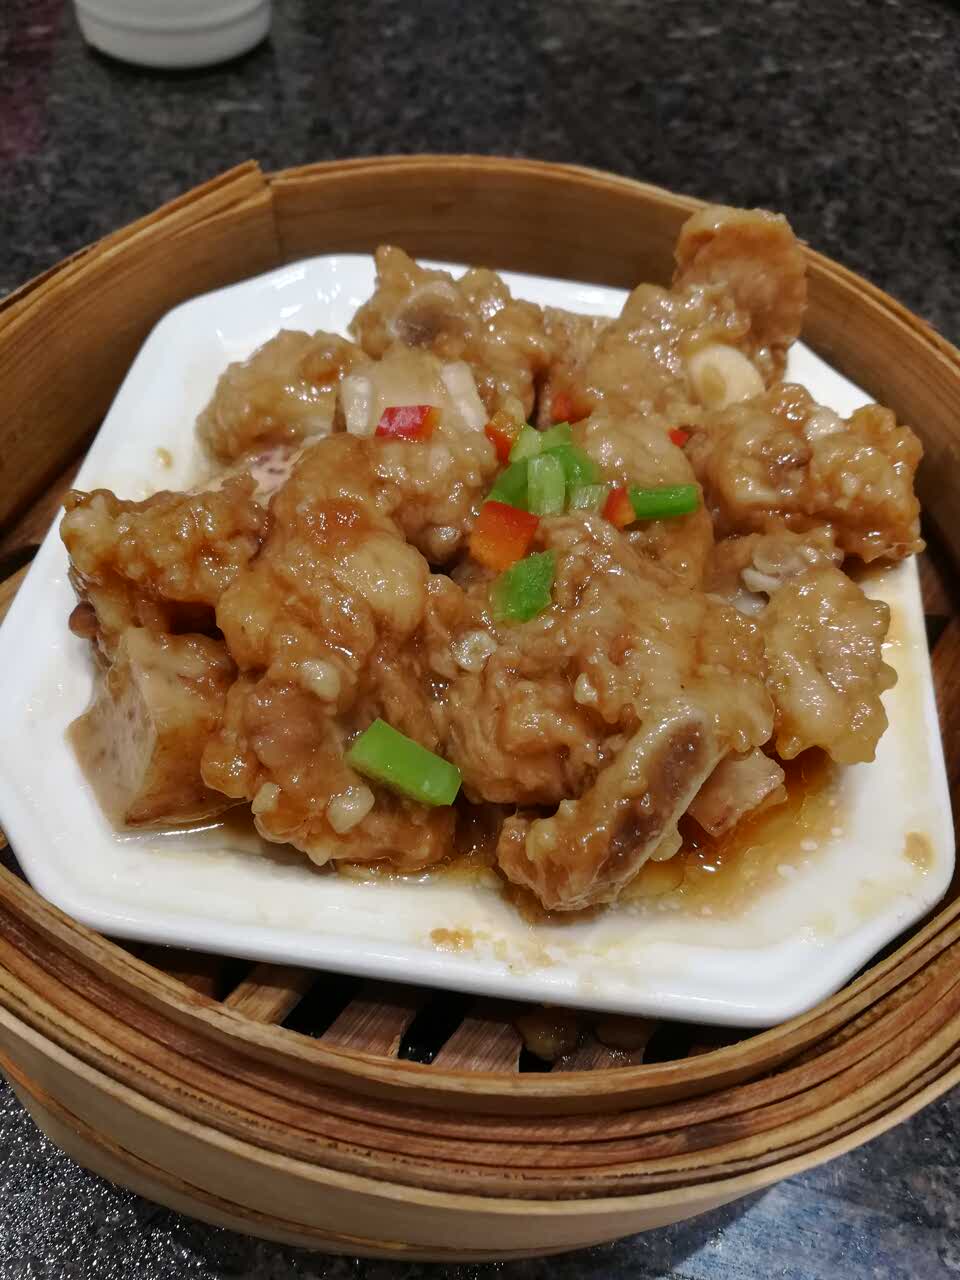 鼎盛虾皇饺和酱香蒸排骨真的好棒,和我在广州吃的一个味道